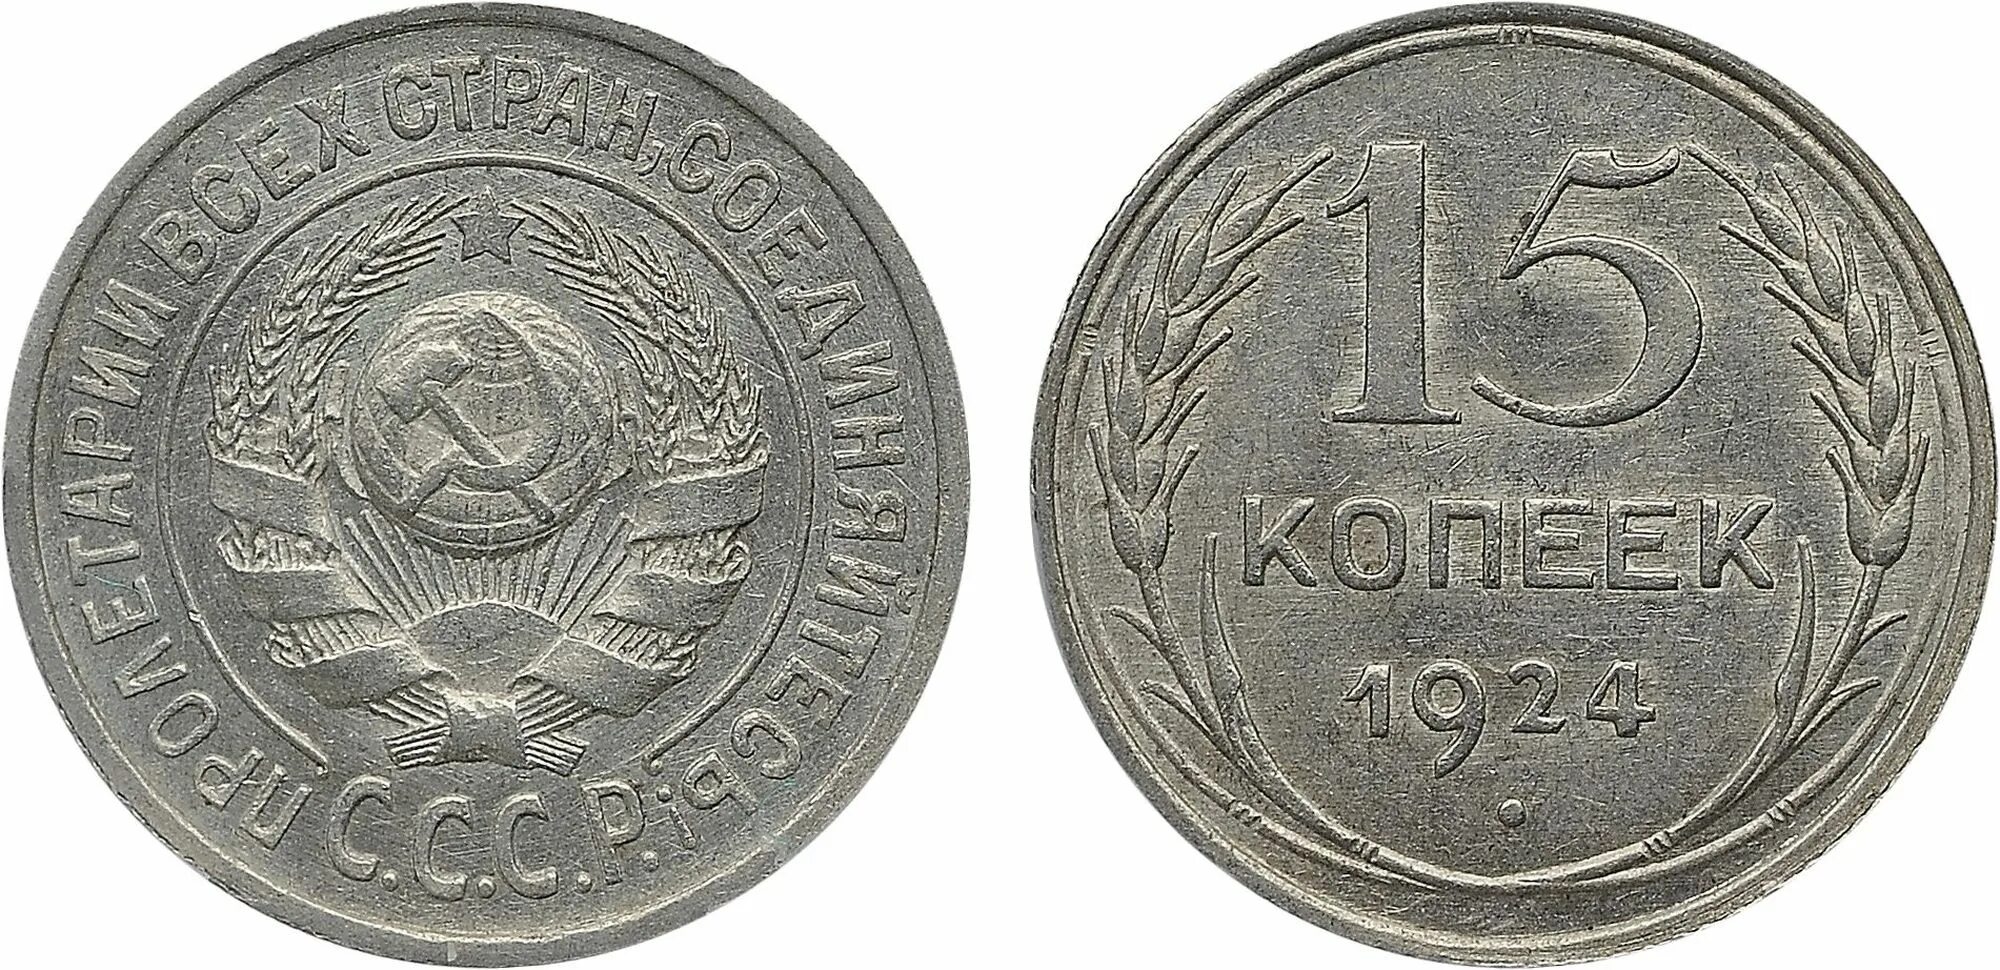 20 Копеек 1925 СССР монеты. Монета 1925 года 20 копеек. 15 Копеек 1924. Монета СССР 20 копеек.